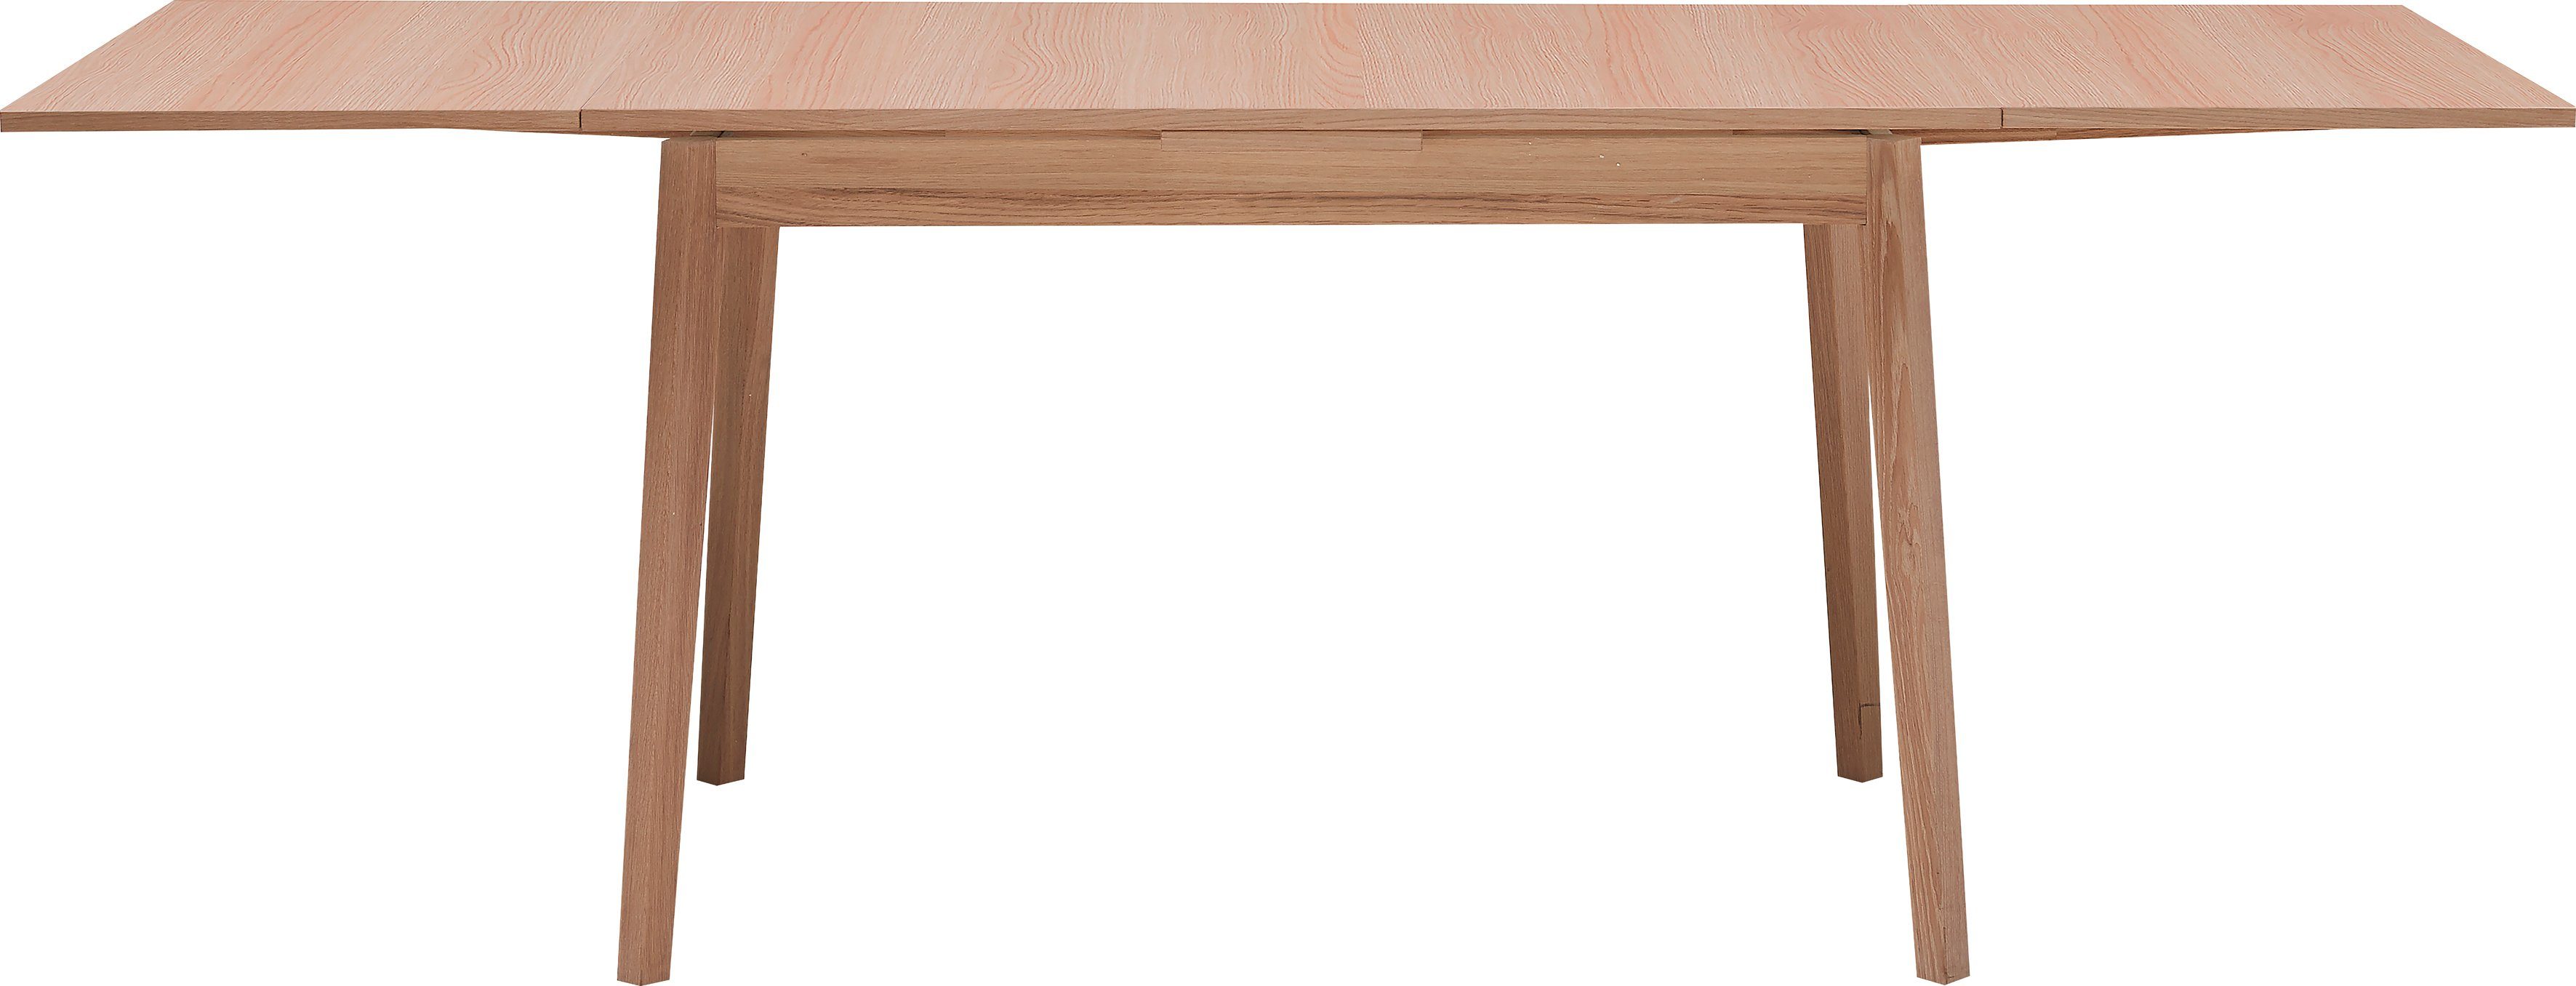 Hammel Furniture Esstisch Basic by Gestell 120(220)x80 cm, Melamin aus Massivholz in Eichefarben Tischplatte Single, und Hammel